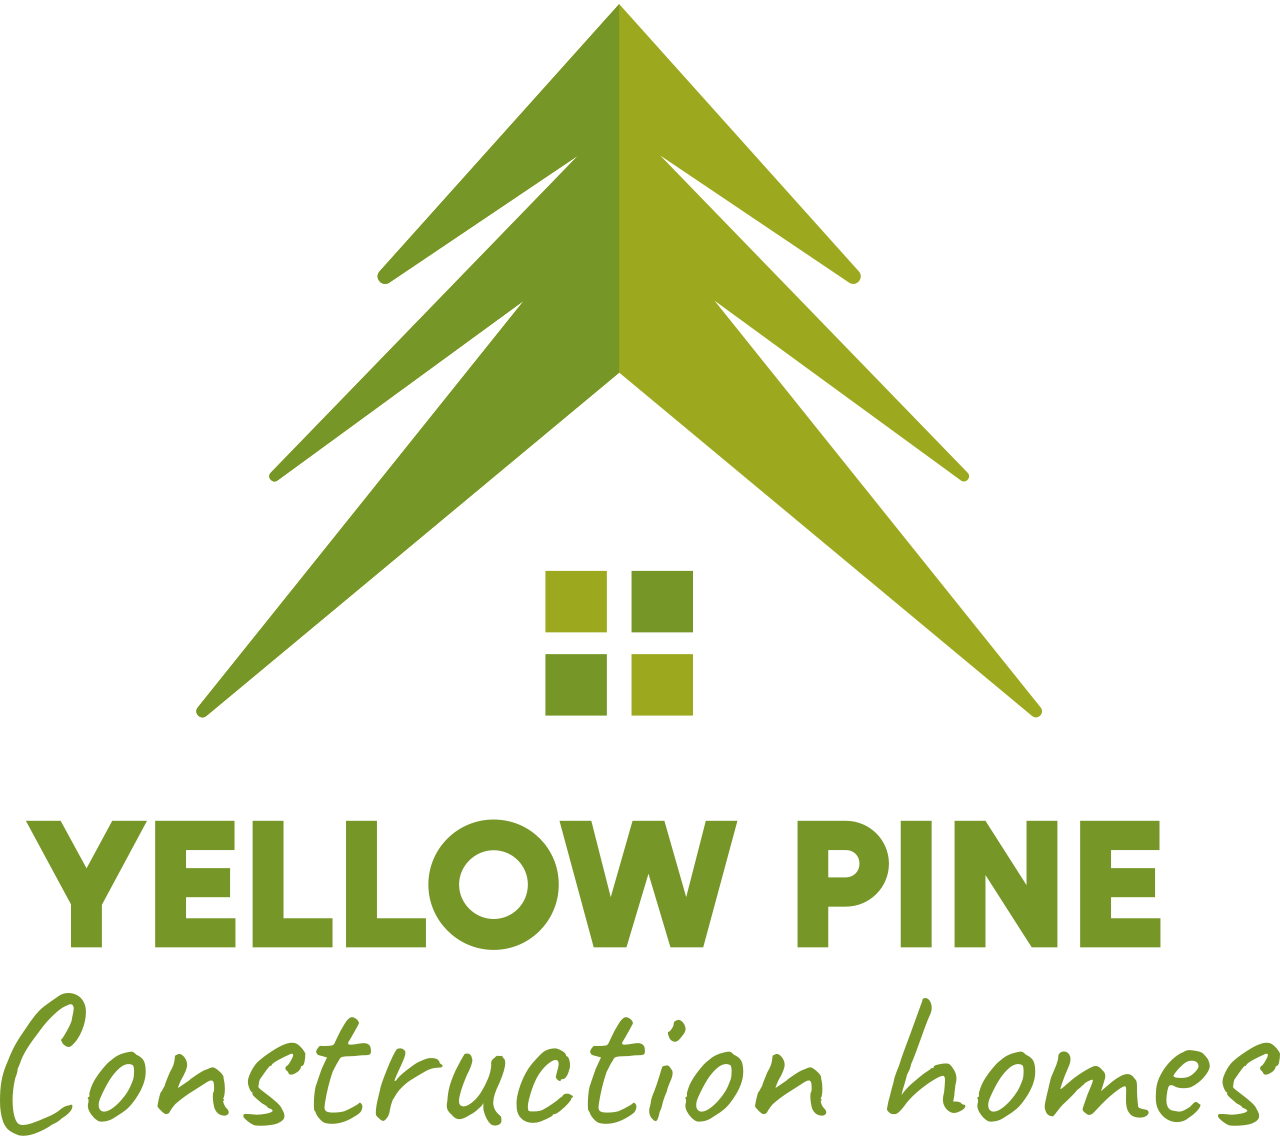 Yellow pine 's logo